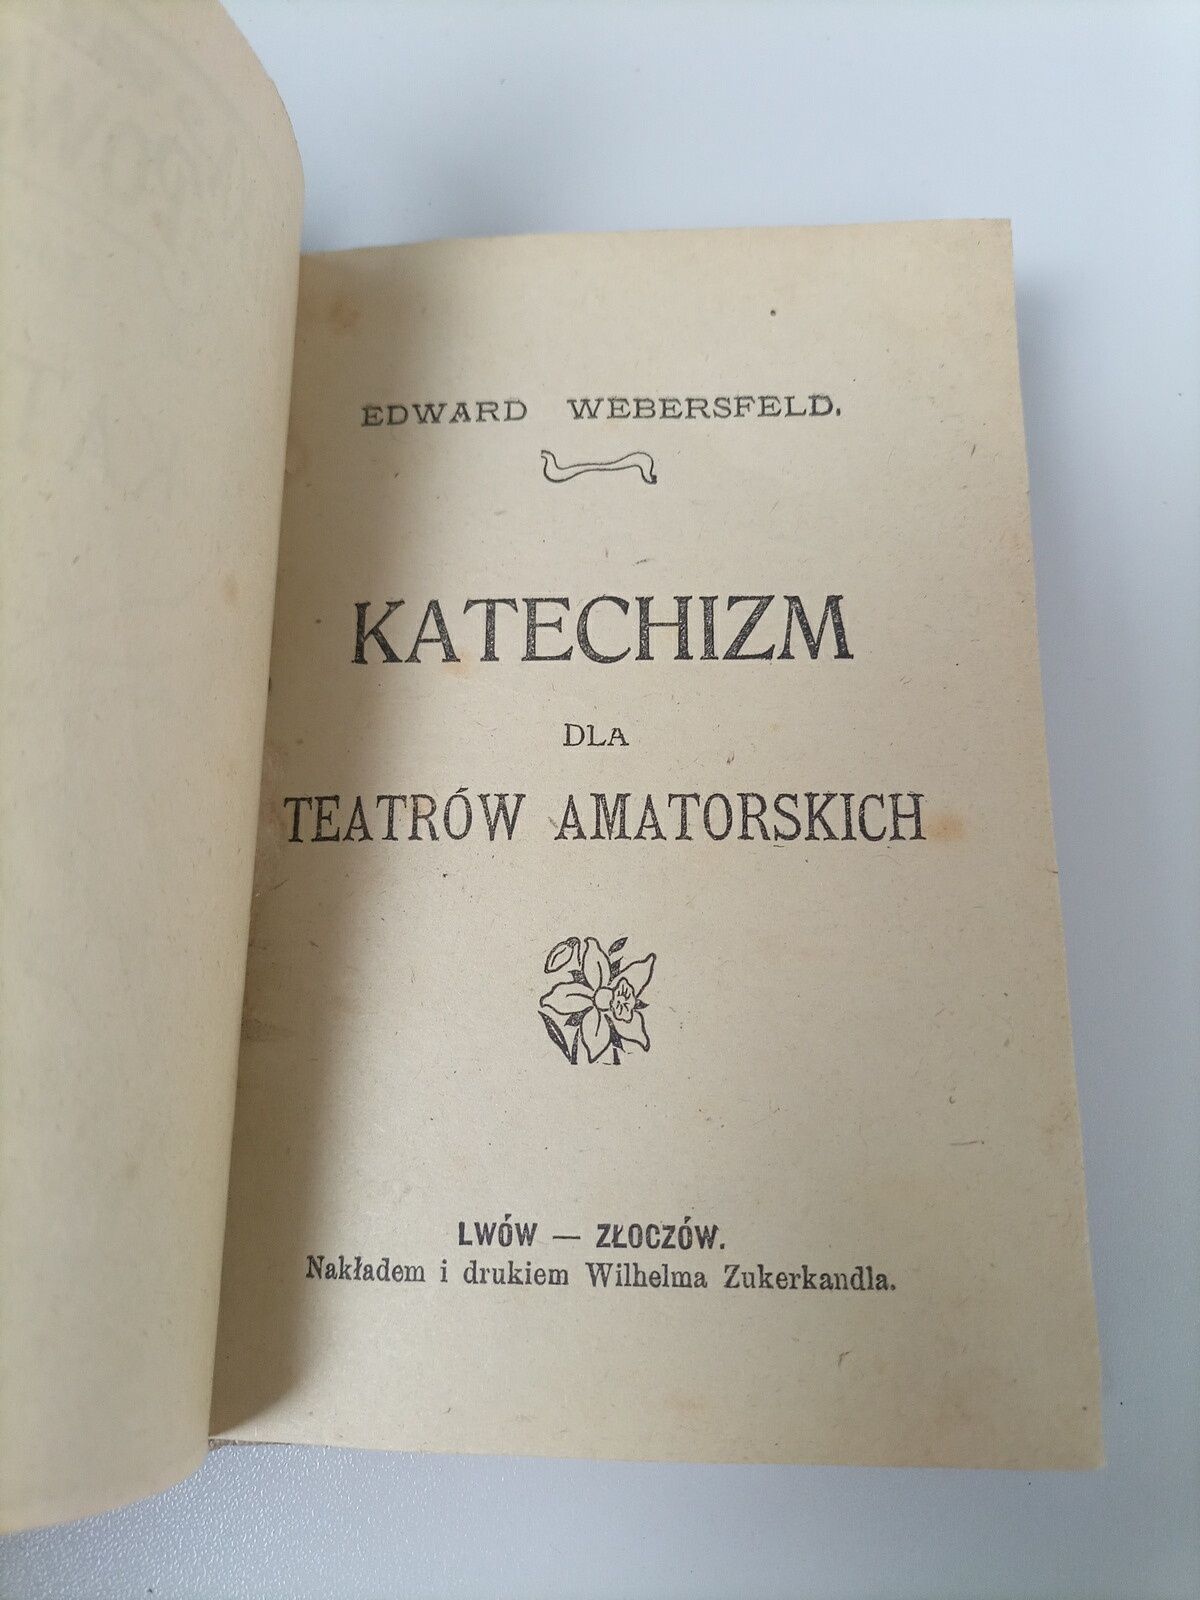 Edward Webersfeld, Katechizm dla teatrów amatorskich, 1905